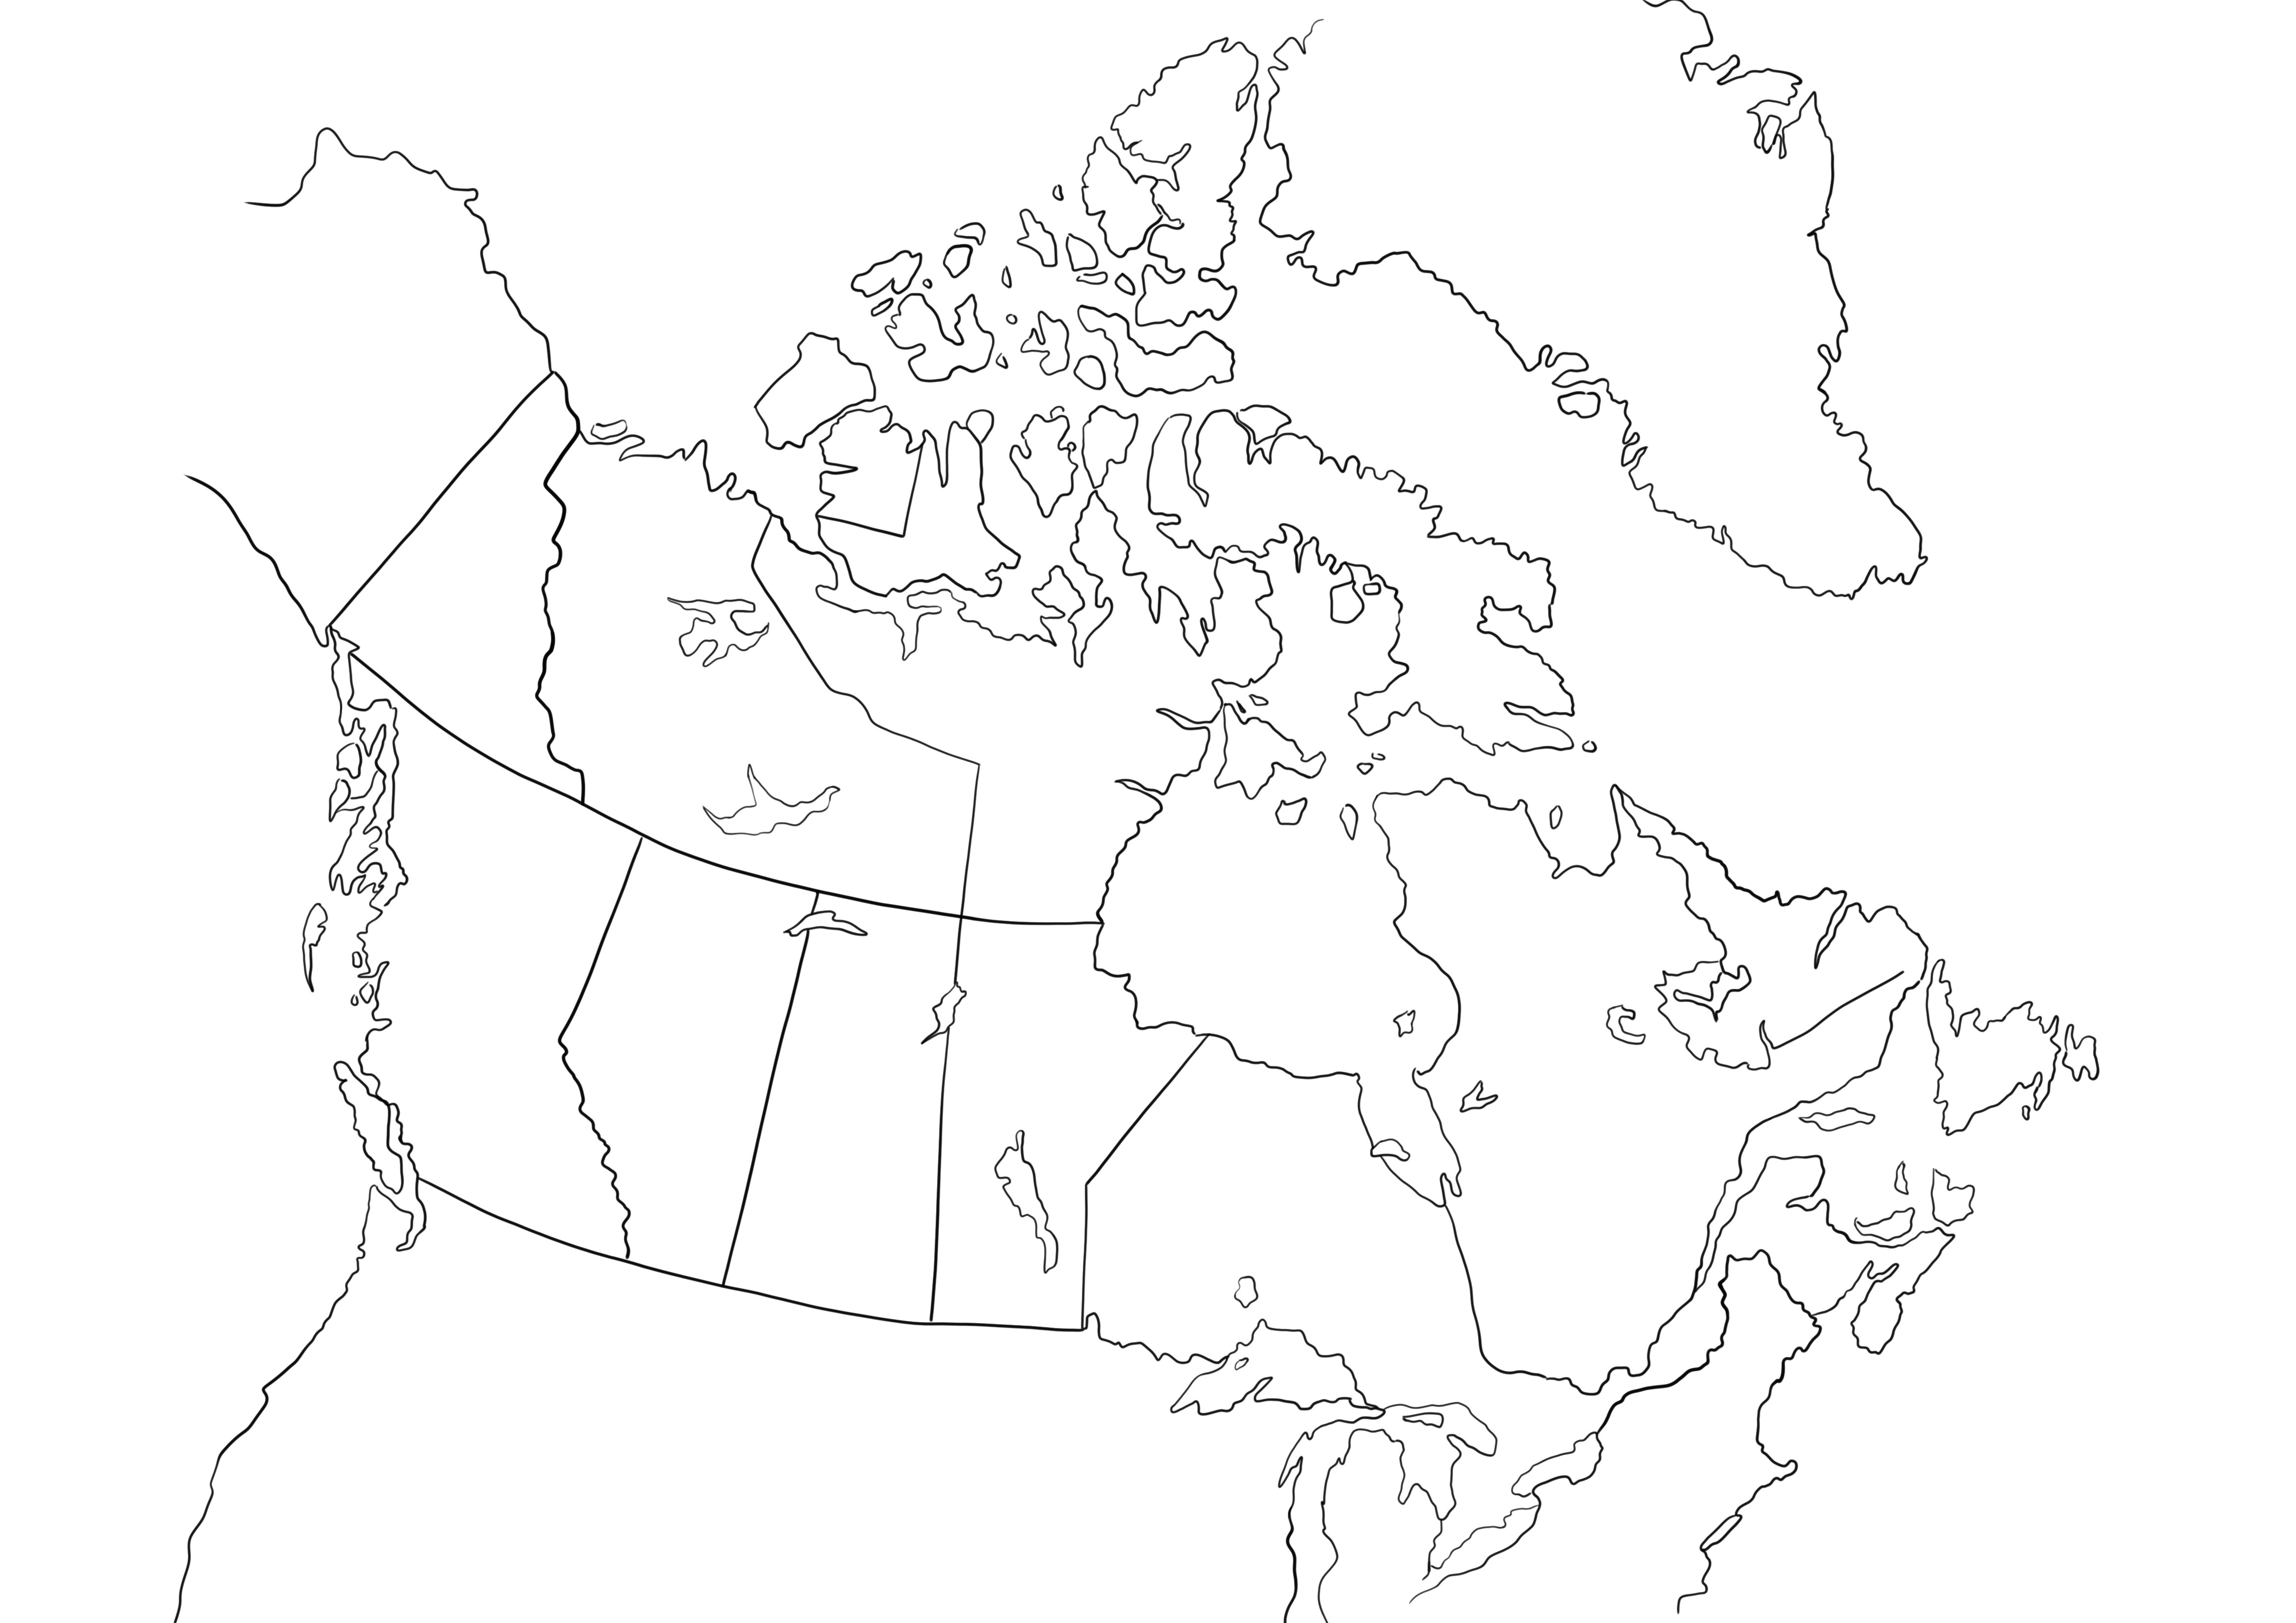 Kanada ülke haritası basit boyama resmi ücretsiz yazdırmak için